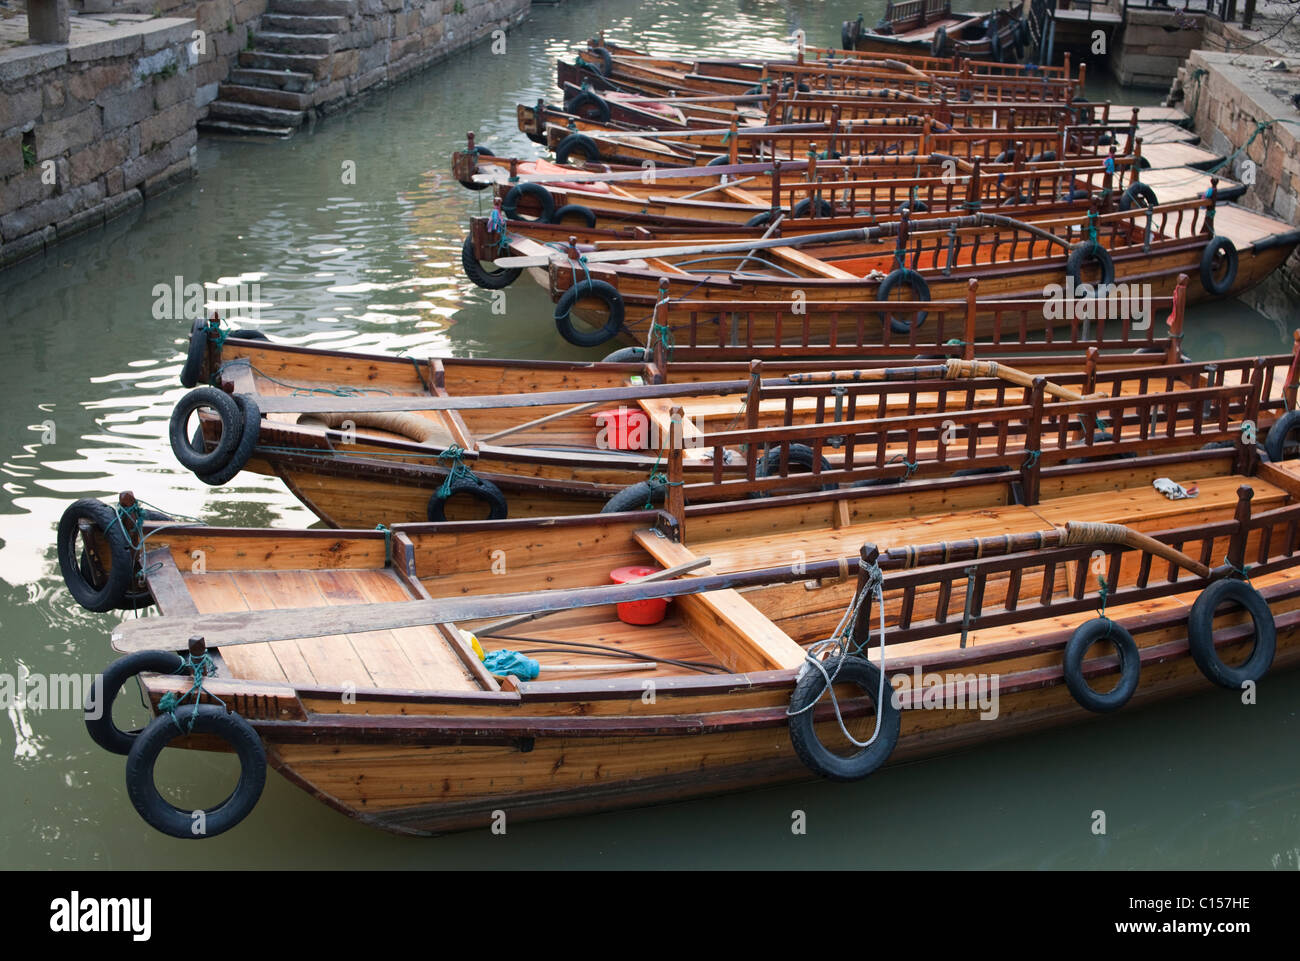 Tourist boats in Tongli canal village, Suzhou, Jiangsu province, China Stock Photo